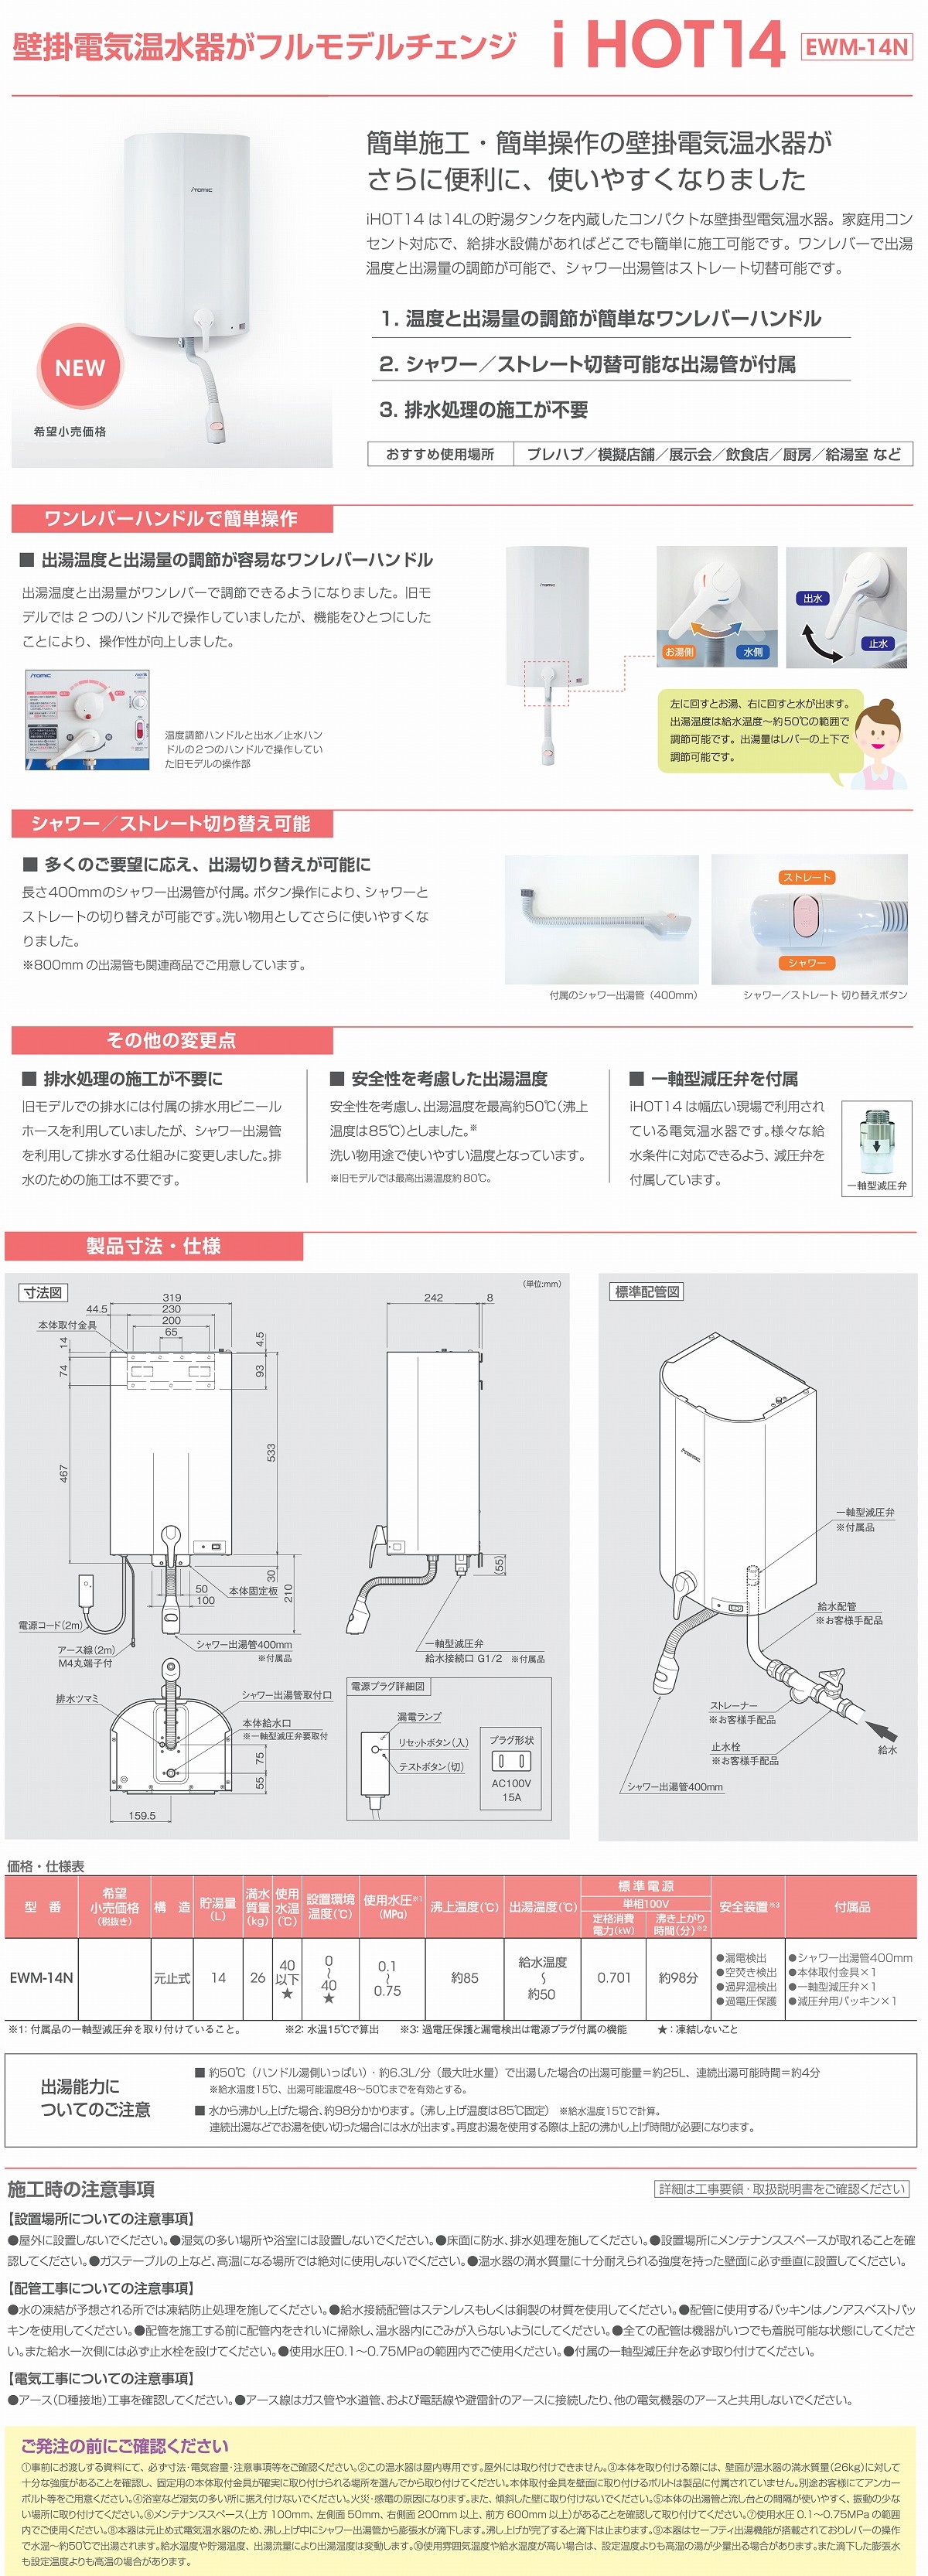 最安値/40%引き送料込！ガス瞬間湯沸器より安全！】 日本イトミック 電気貯湯式 台所用壁掛湯沸器 iHOT14 EWM-14N